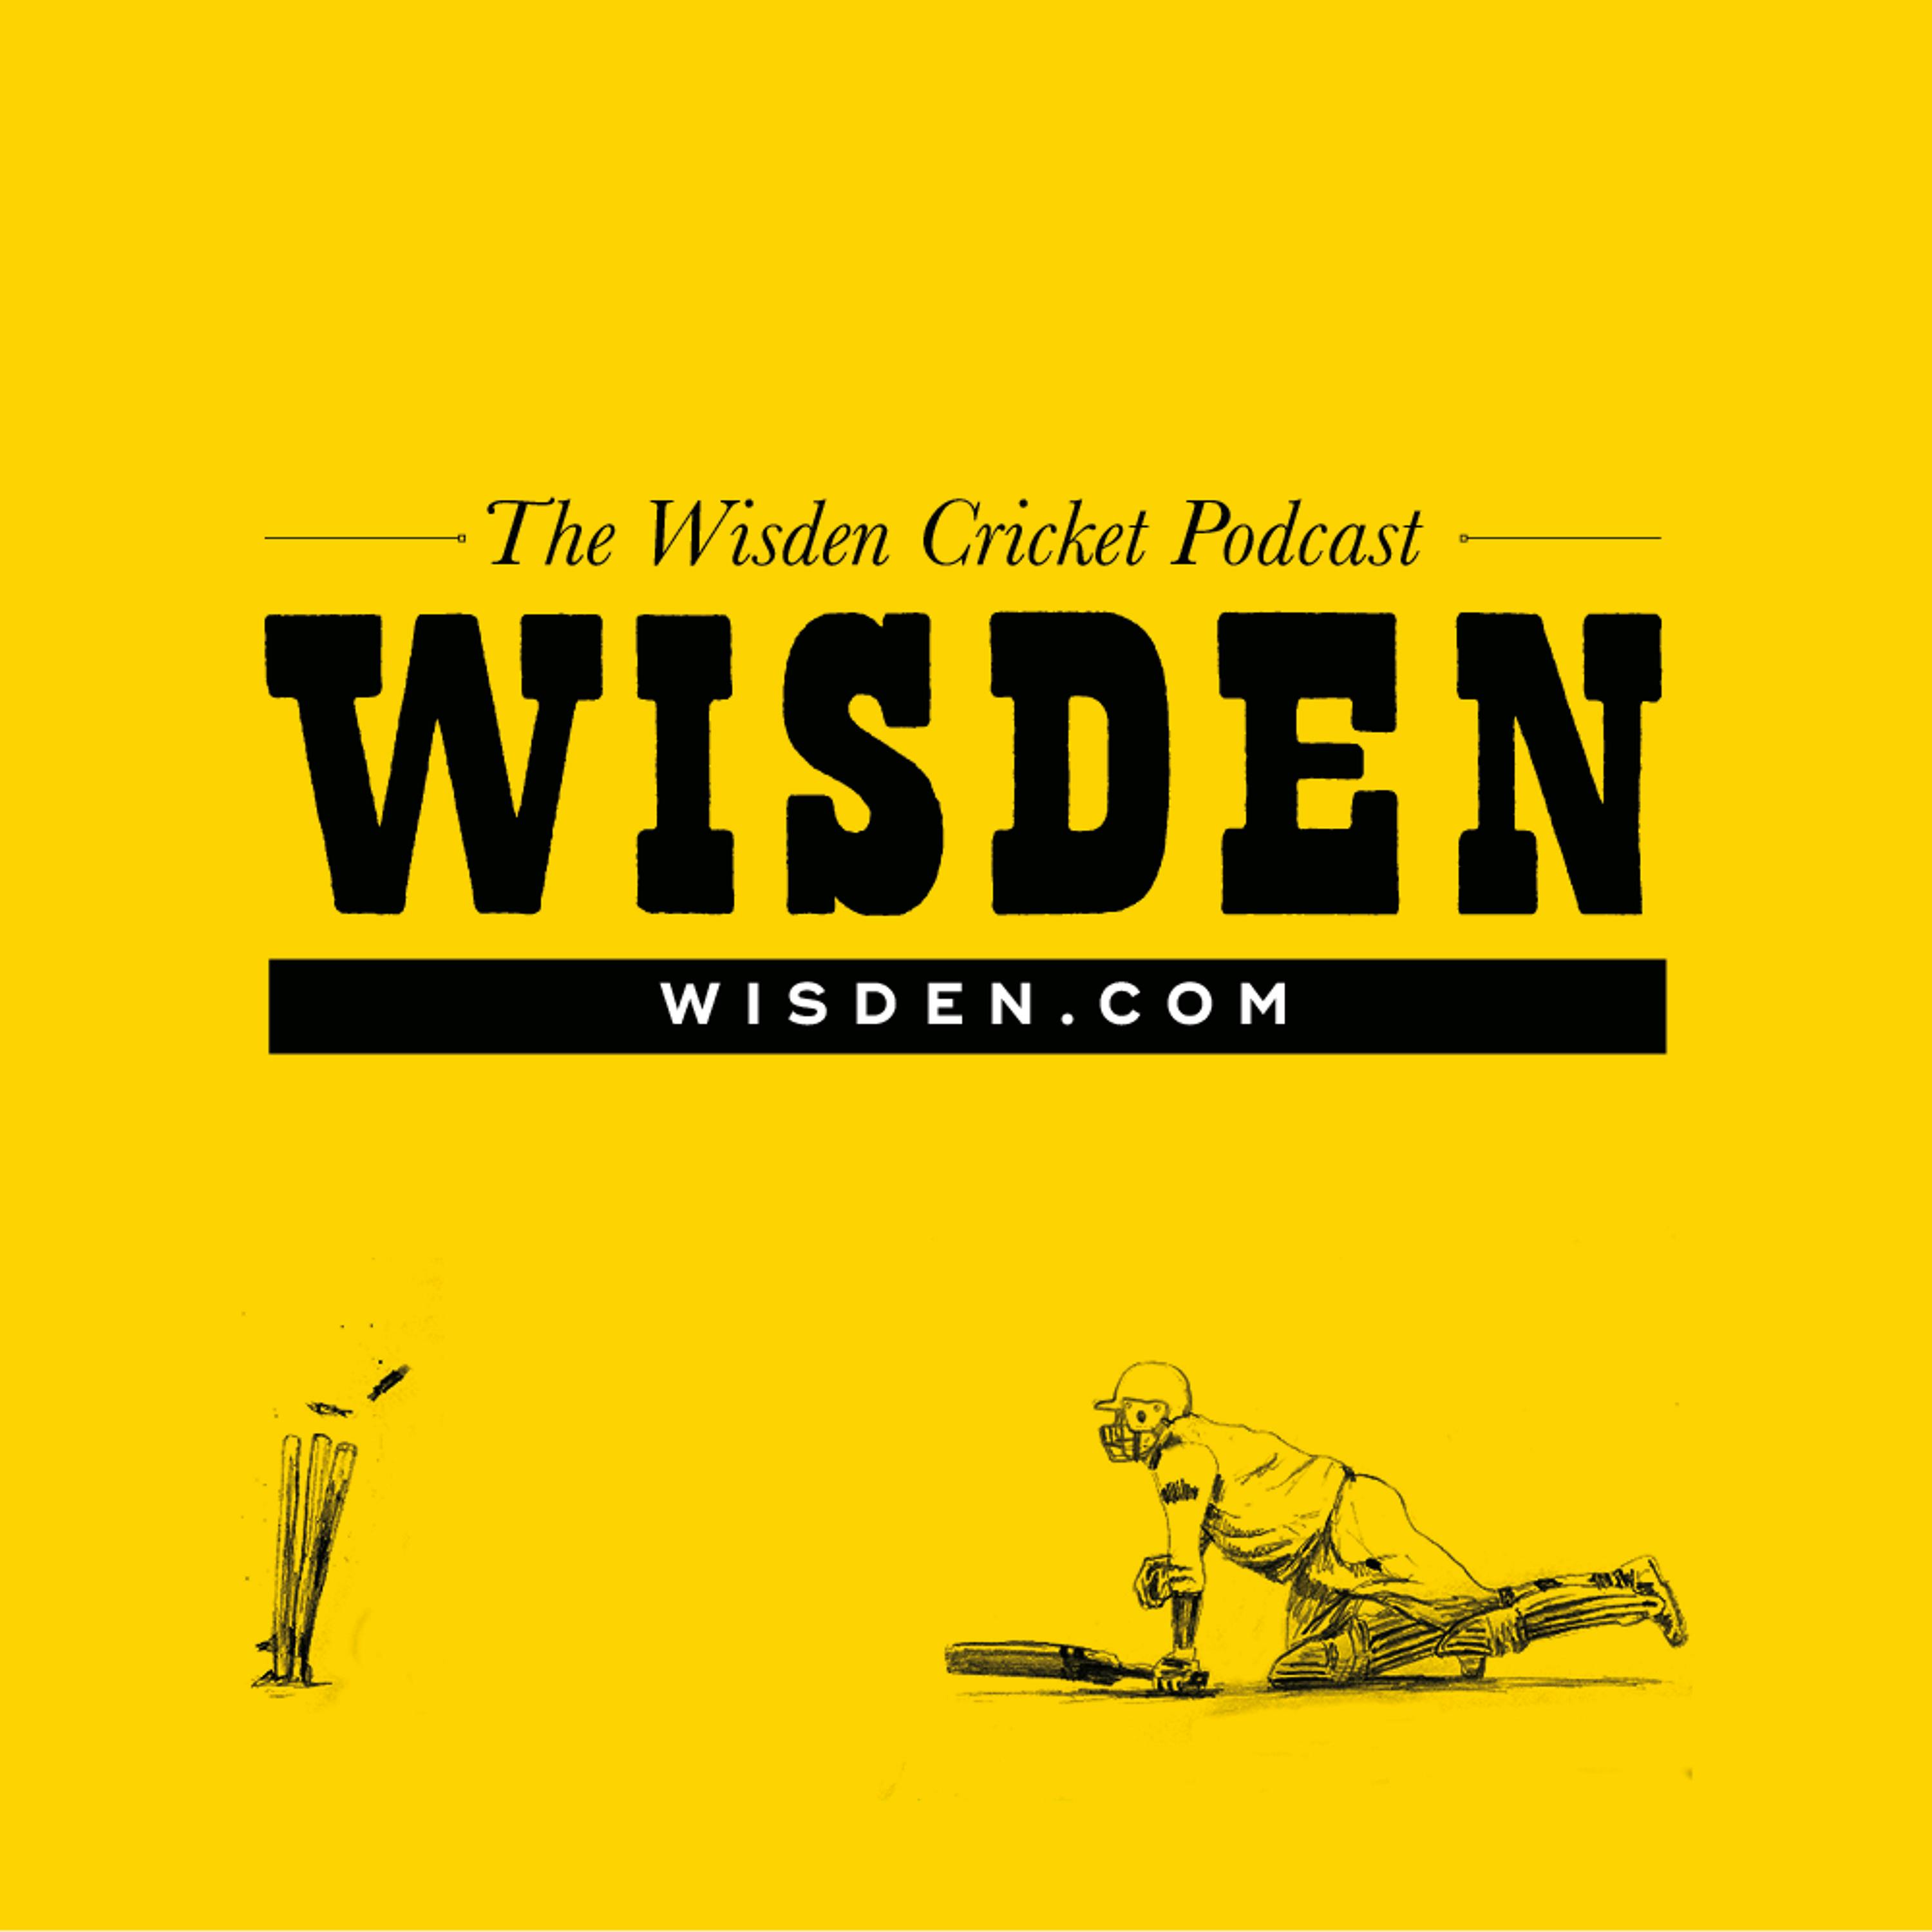 The Wisden Cricket Podcast: Episode 6 – Jason Gillespie